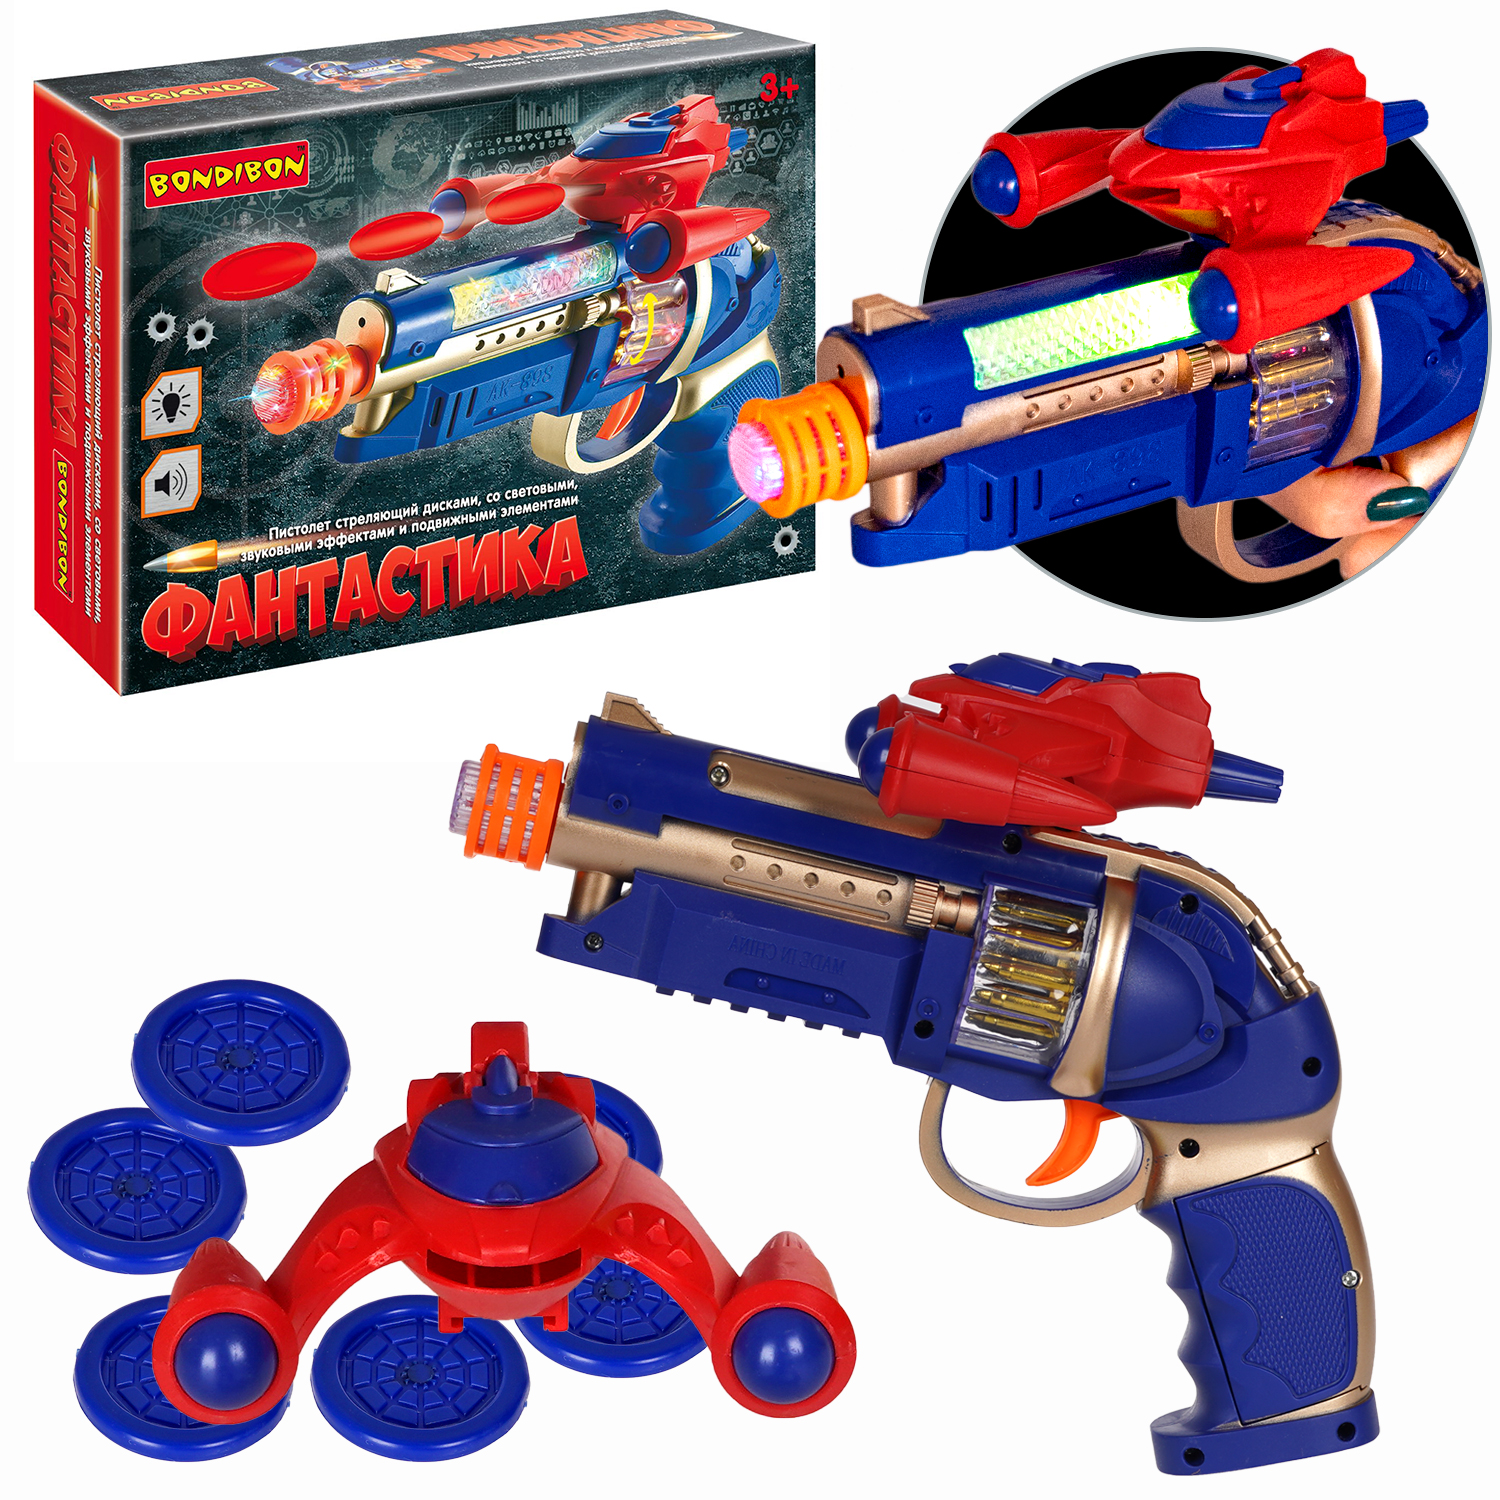 Пистолет-дискомёт BONDIBON Фантастика стреляет дисками со свето-звуковым эффектом красно-синего цвета - фото 1